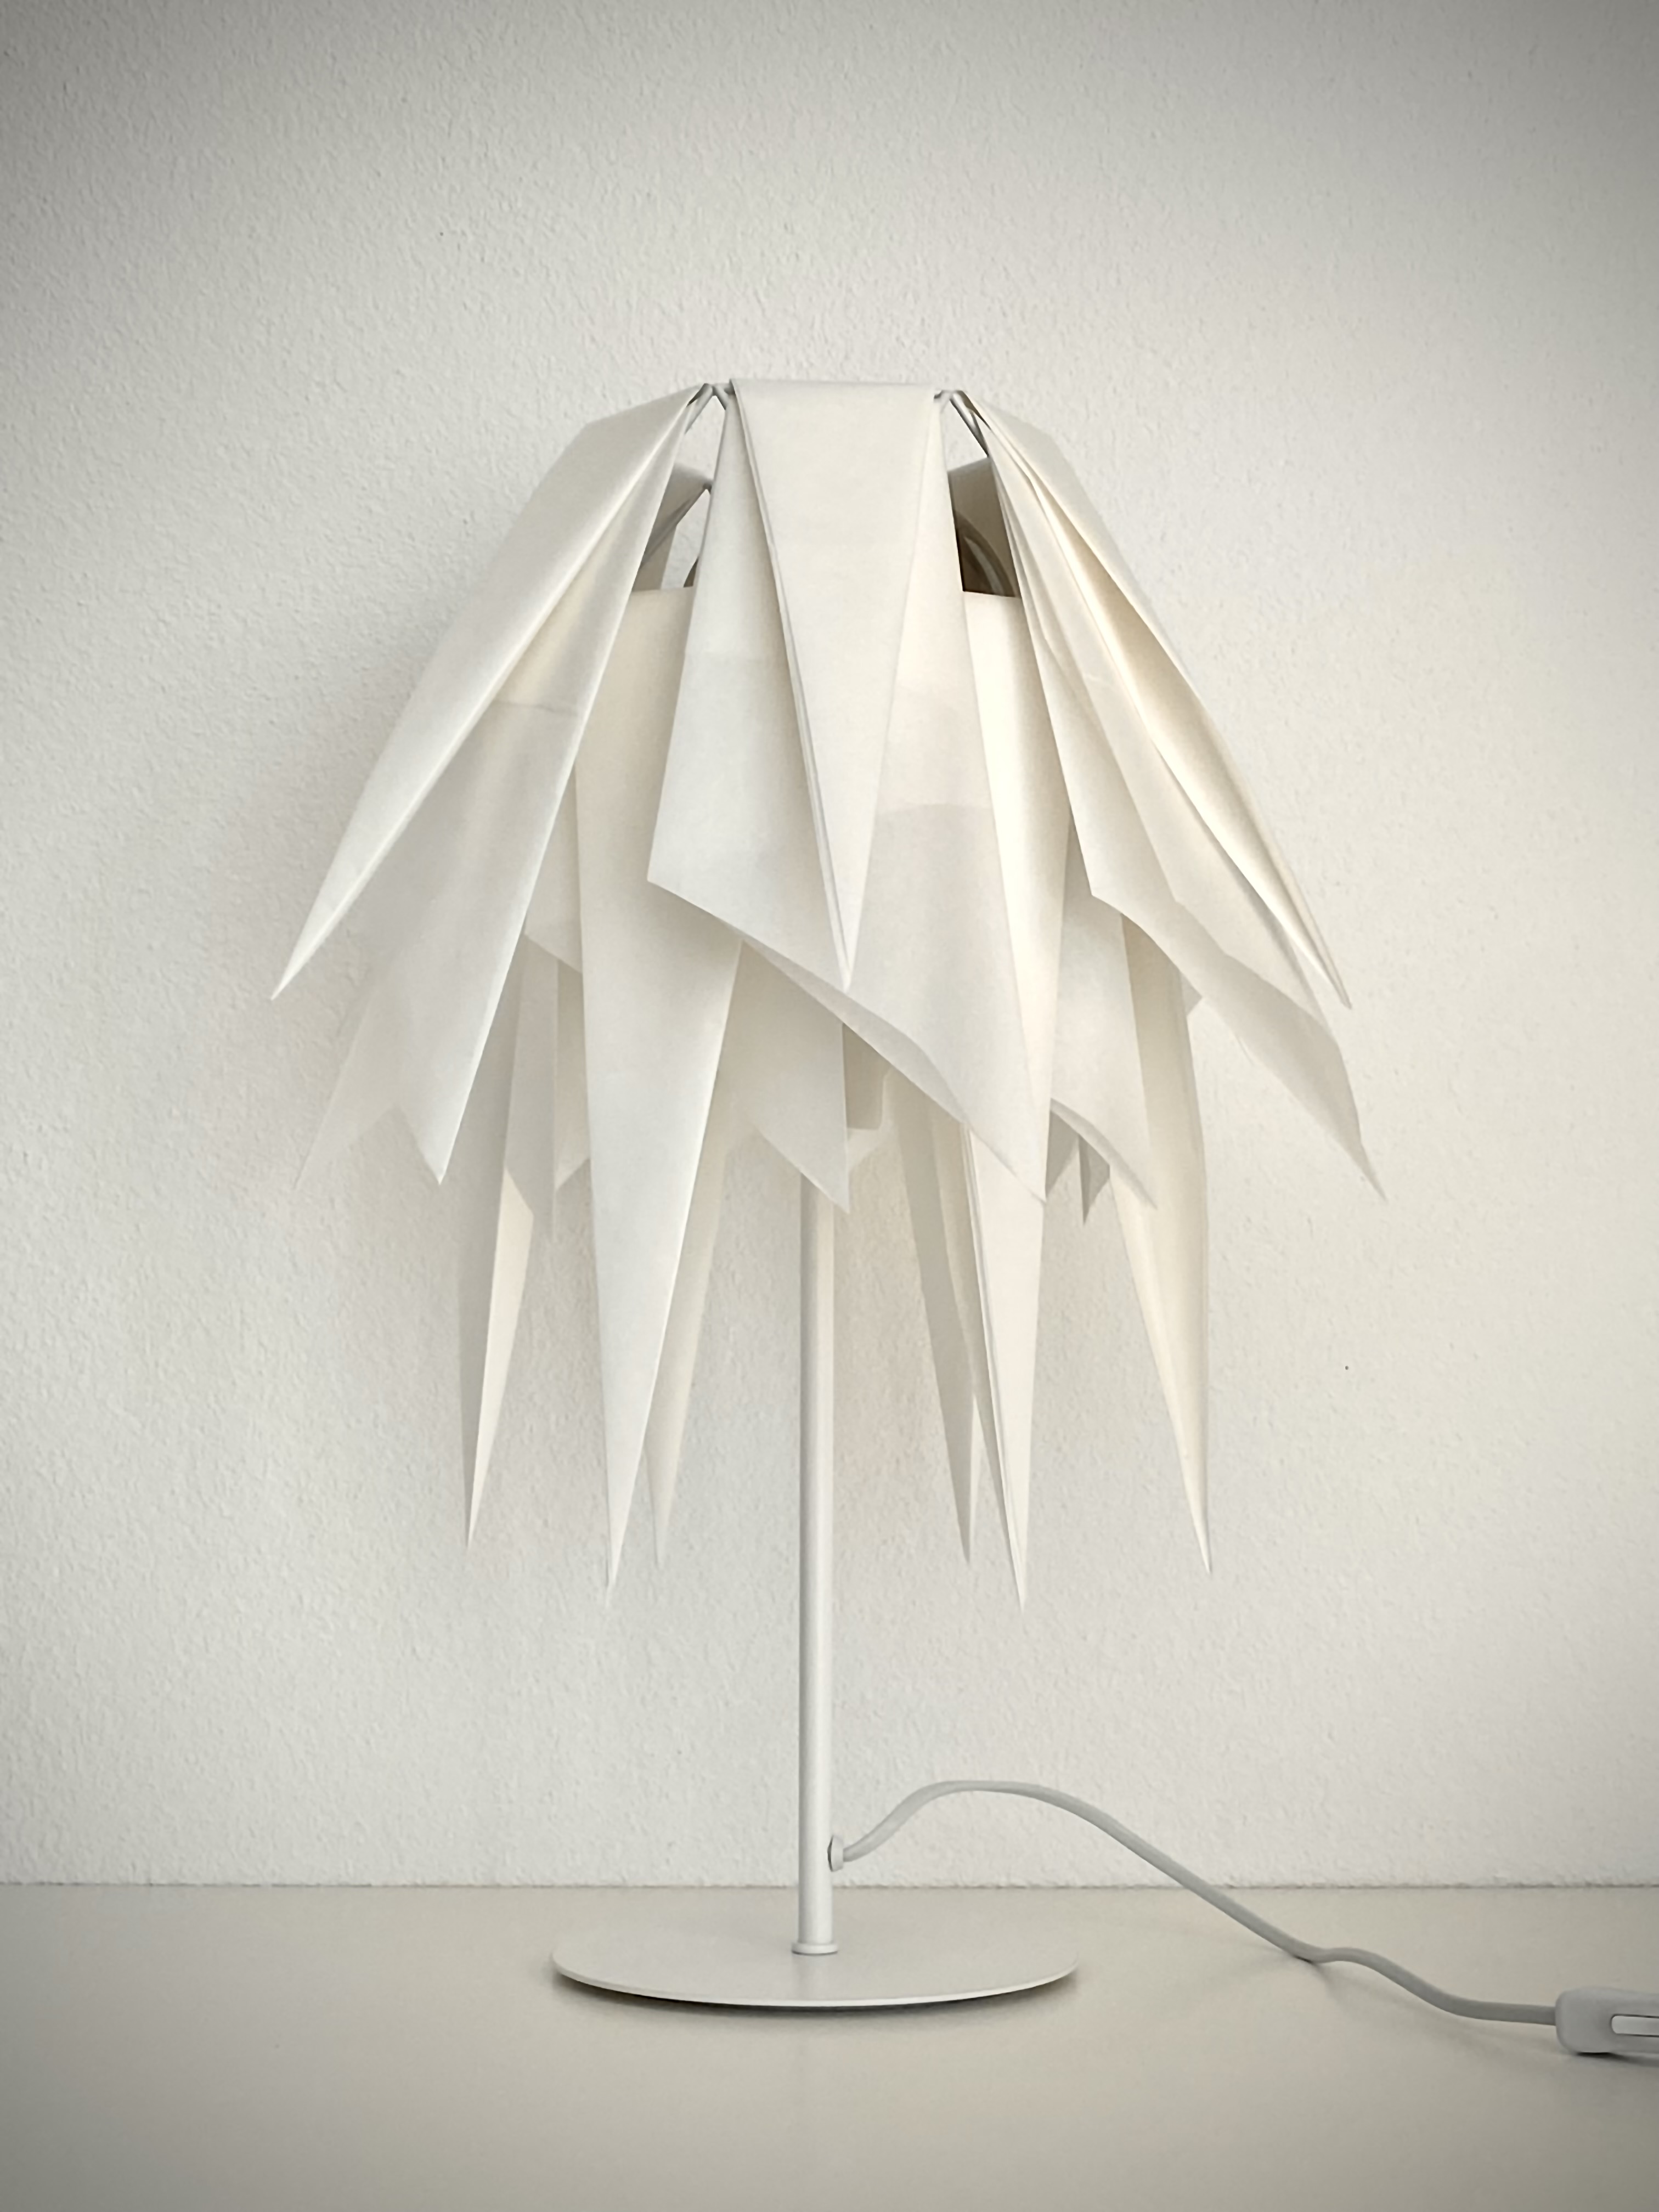 Lampada appoggio,table lamp,White Flower,Fiore bianco,Elisa Berger Design,arredamento,Lugano,Milano.